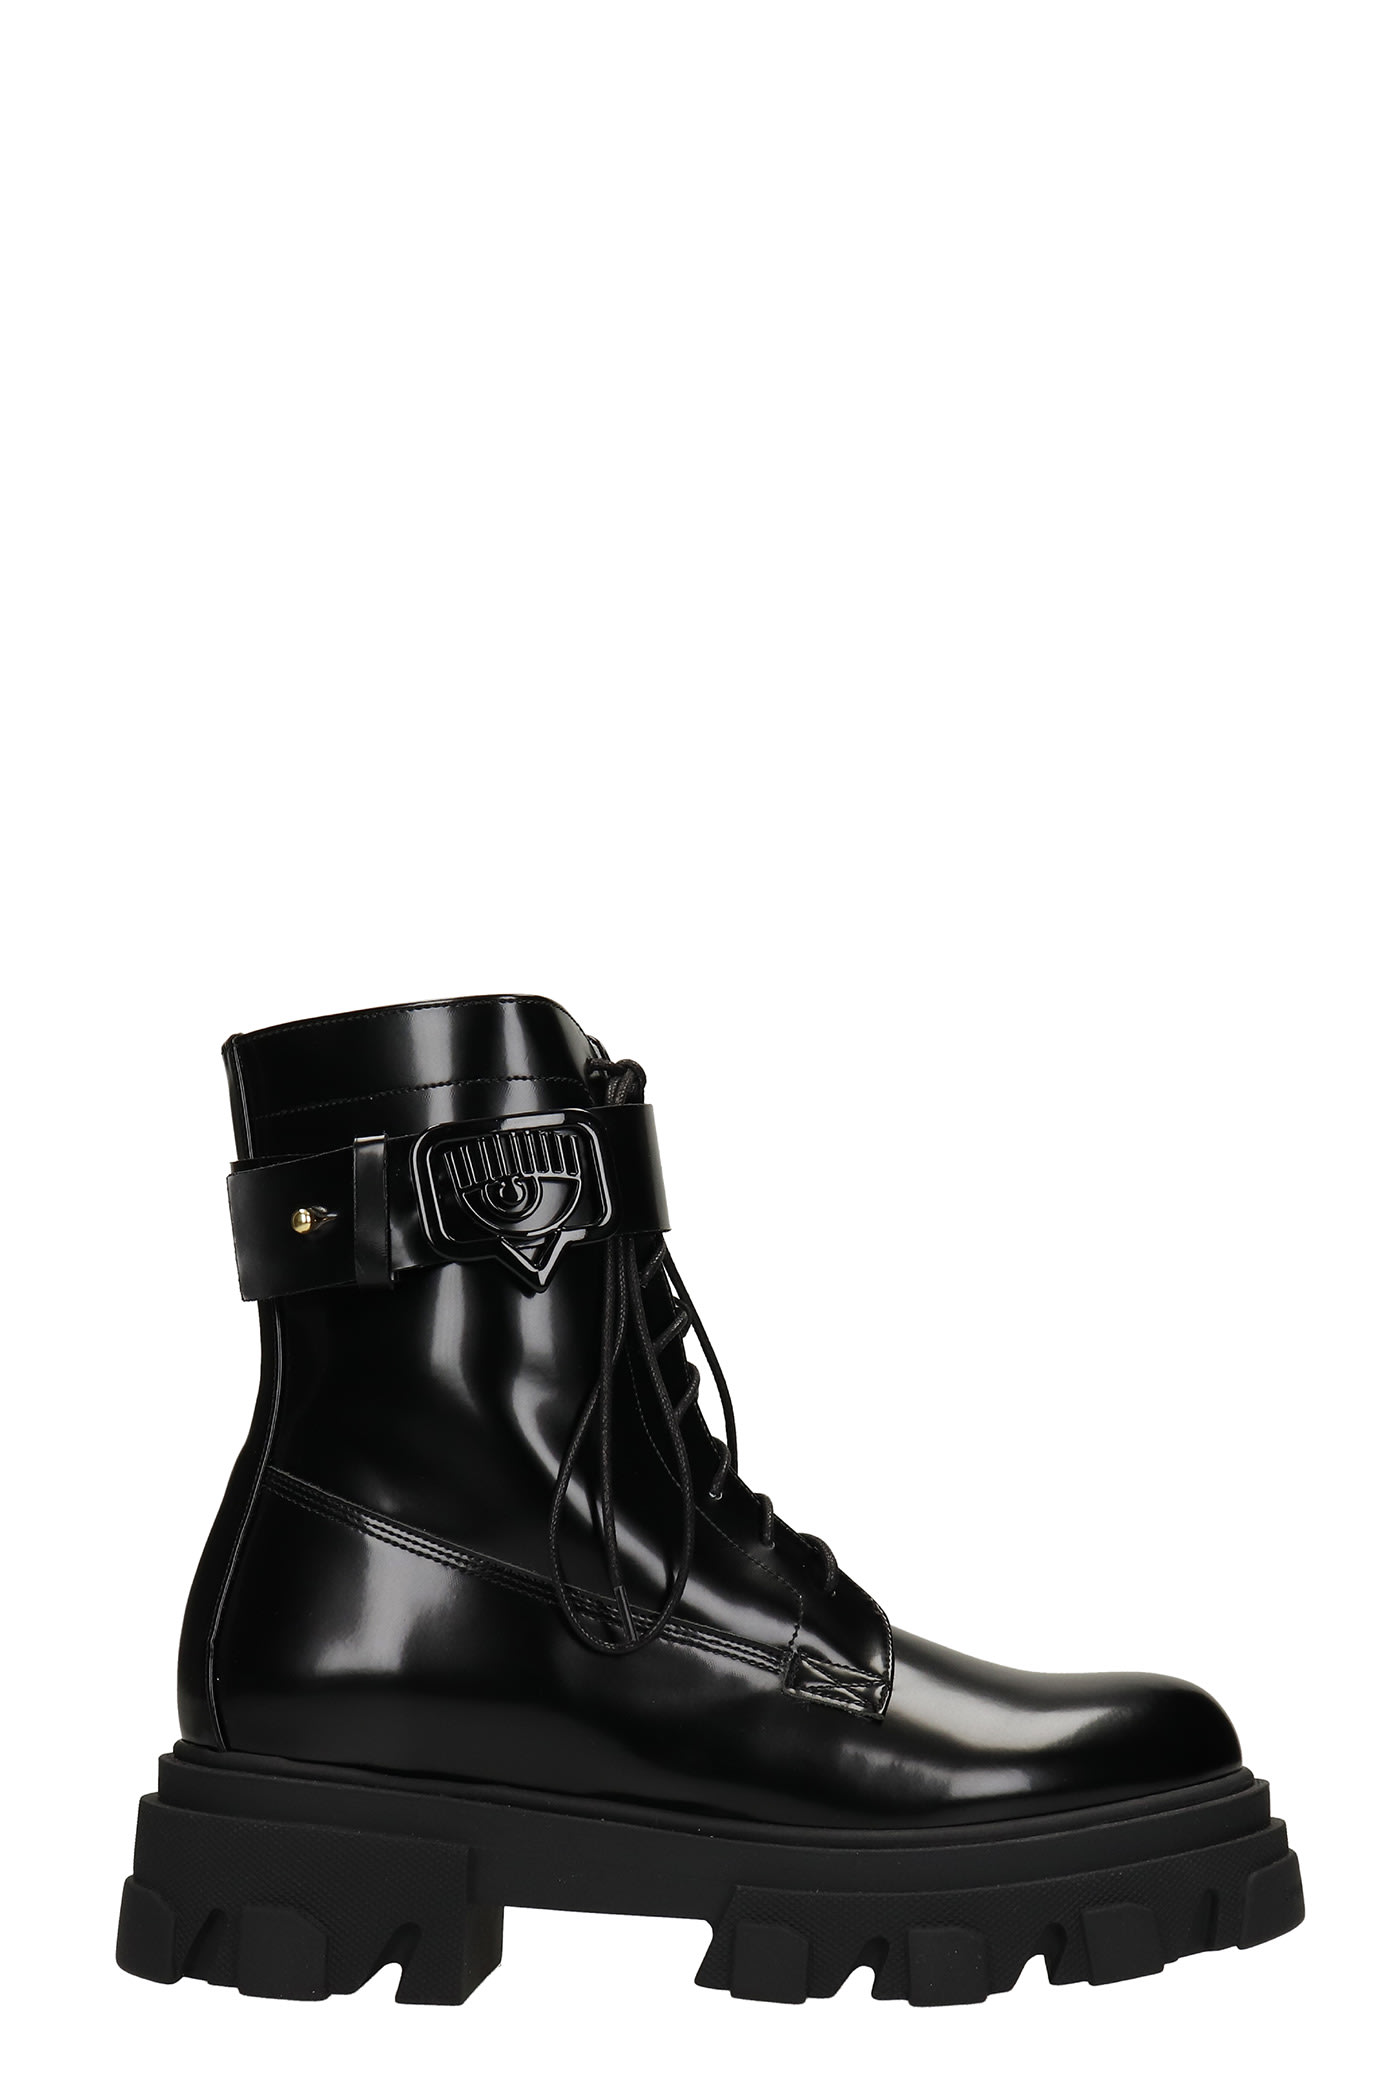 Chiara Ferragni Combat Boots In Black Leather